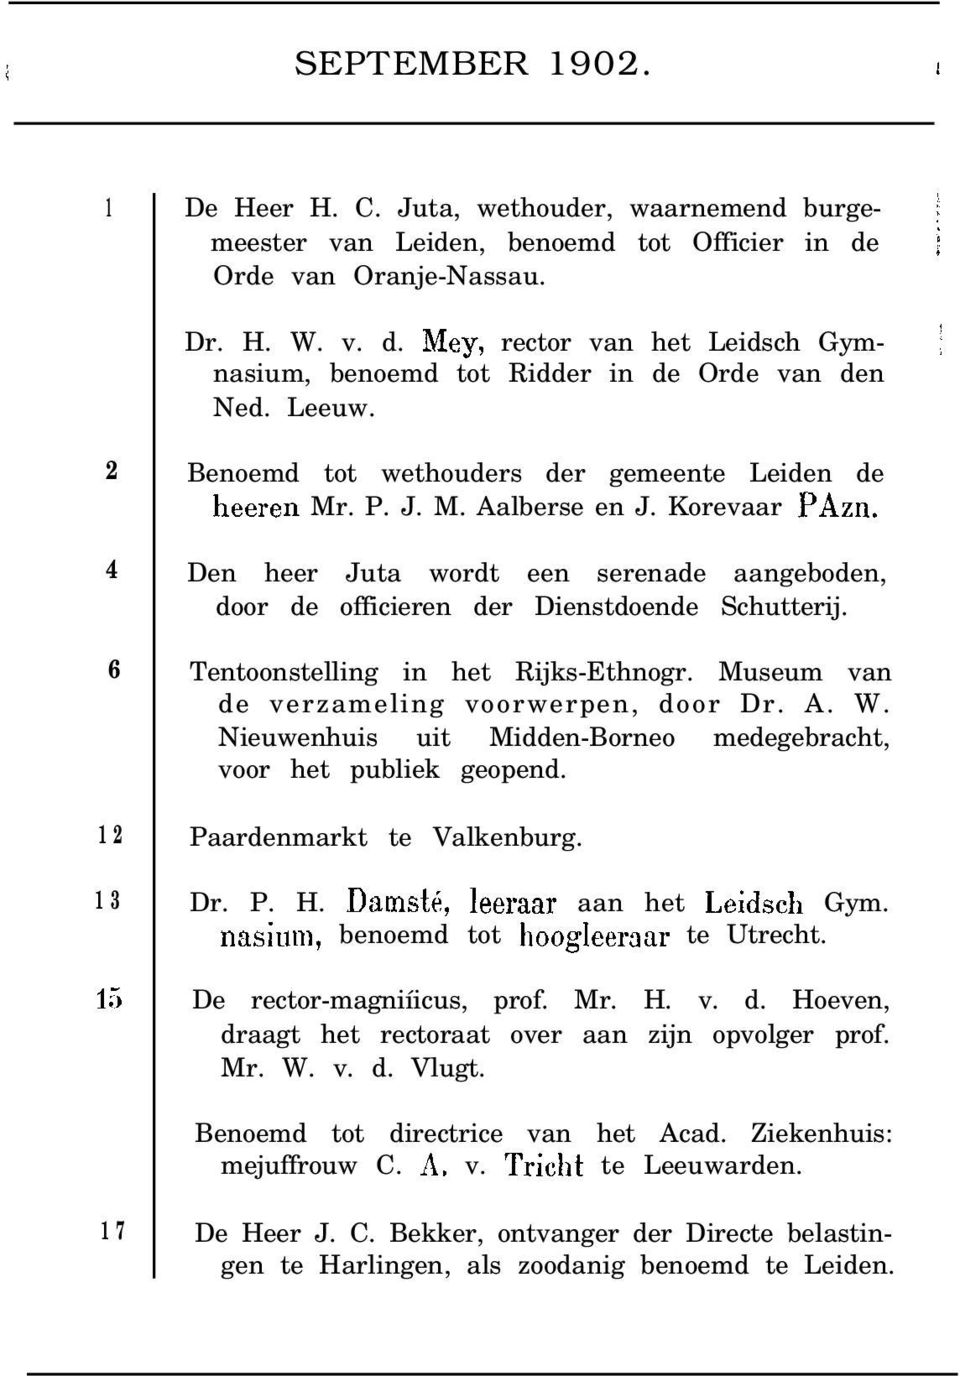 5 Benoemd tot wethouders der gemeente Leiden de heeren Mr. P. J. M. Aalberse en J. Korevaar PAzn. Den heer Juta wordt een serenade aangeboden, door de officieren der Dienstdoende Schutterij.